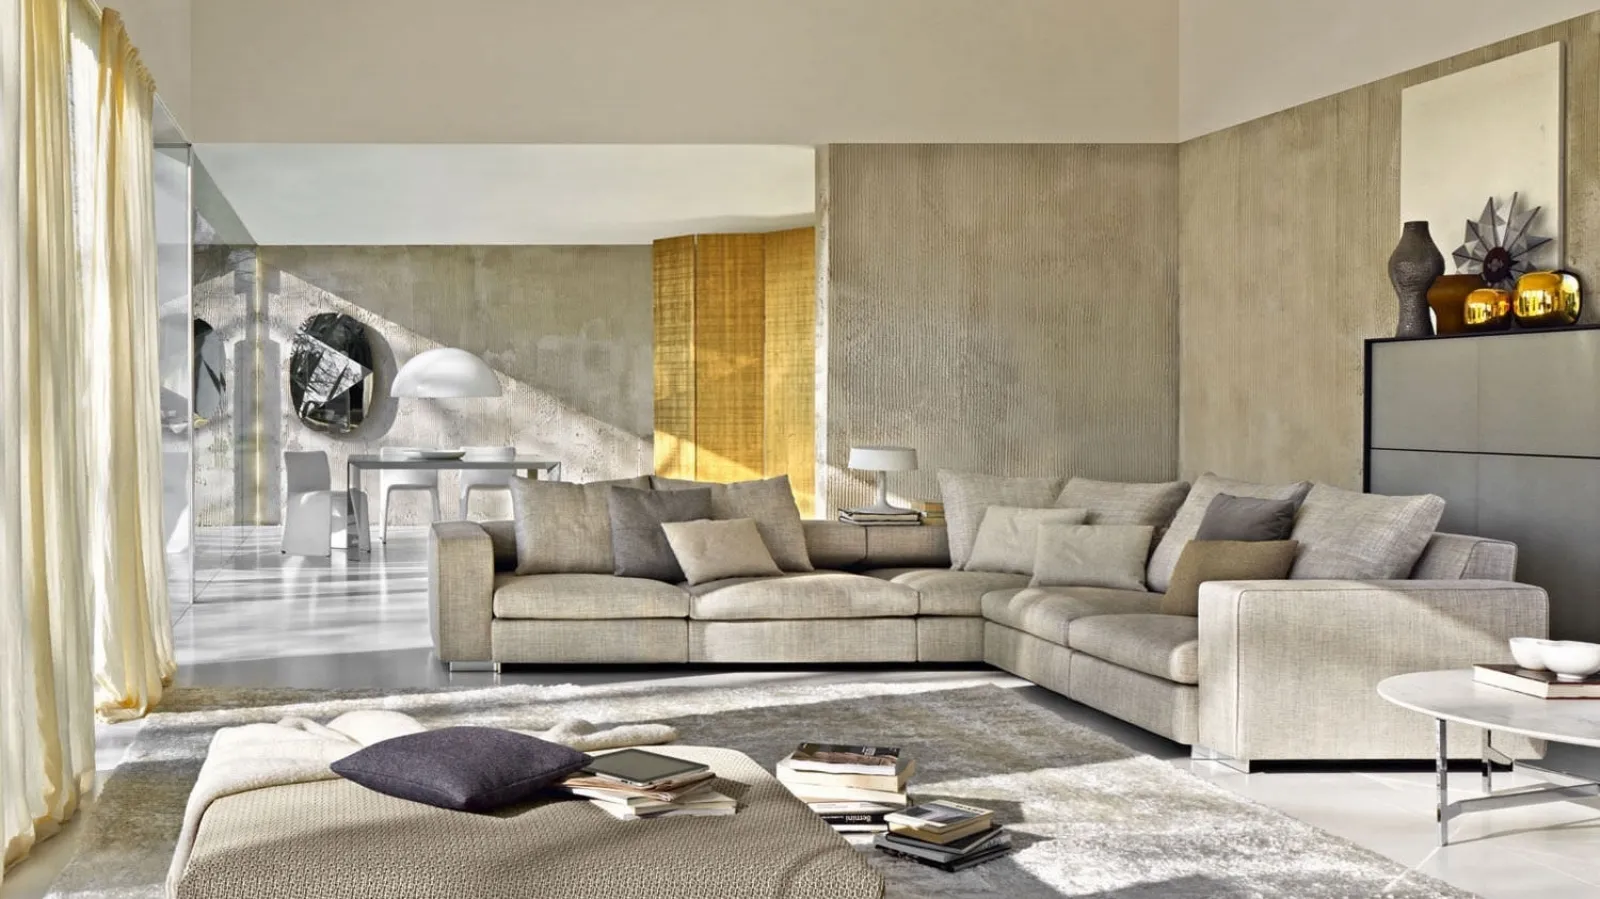 Colori pareti moderne tendenze casa for Pittura soggiorno moderno